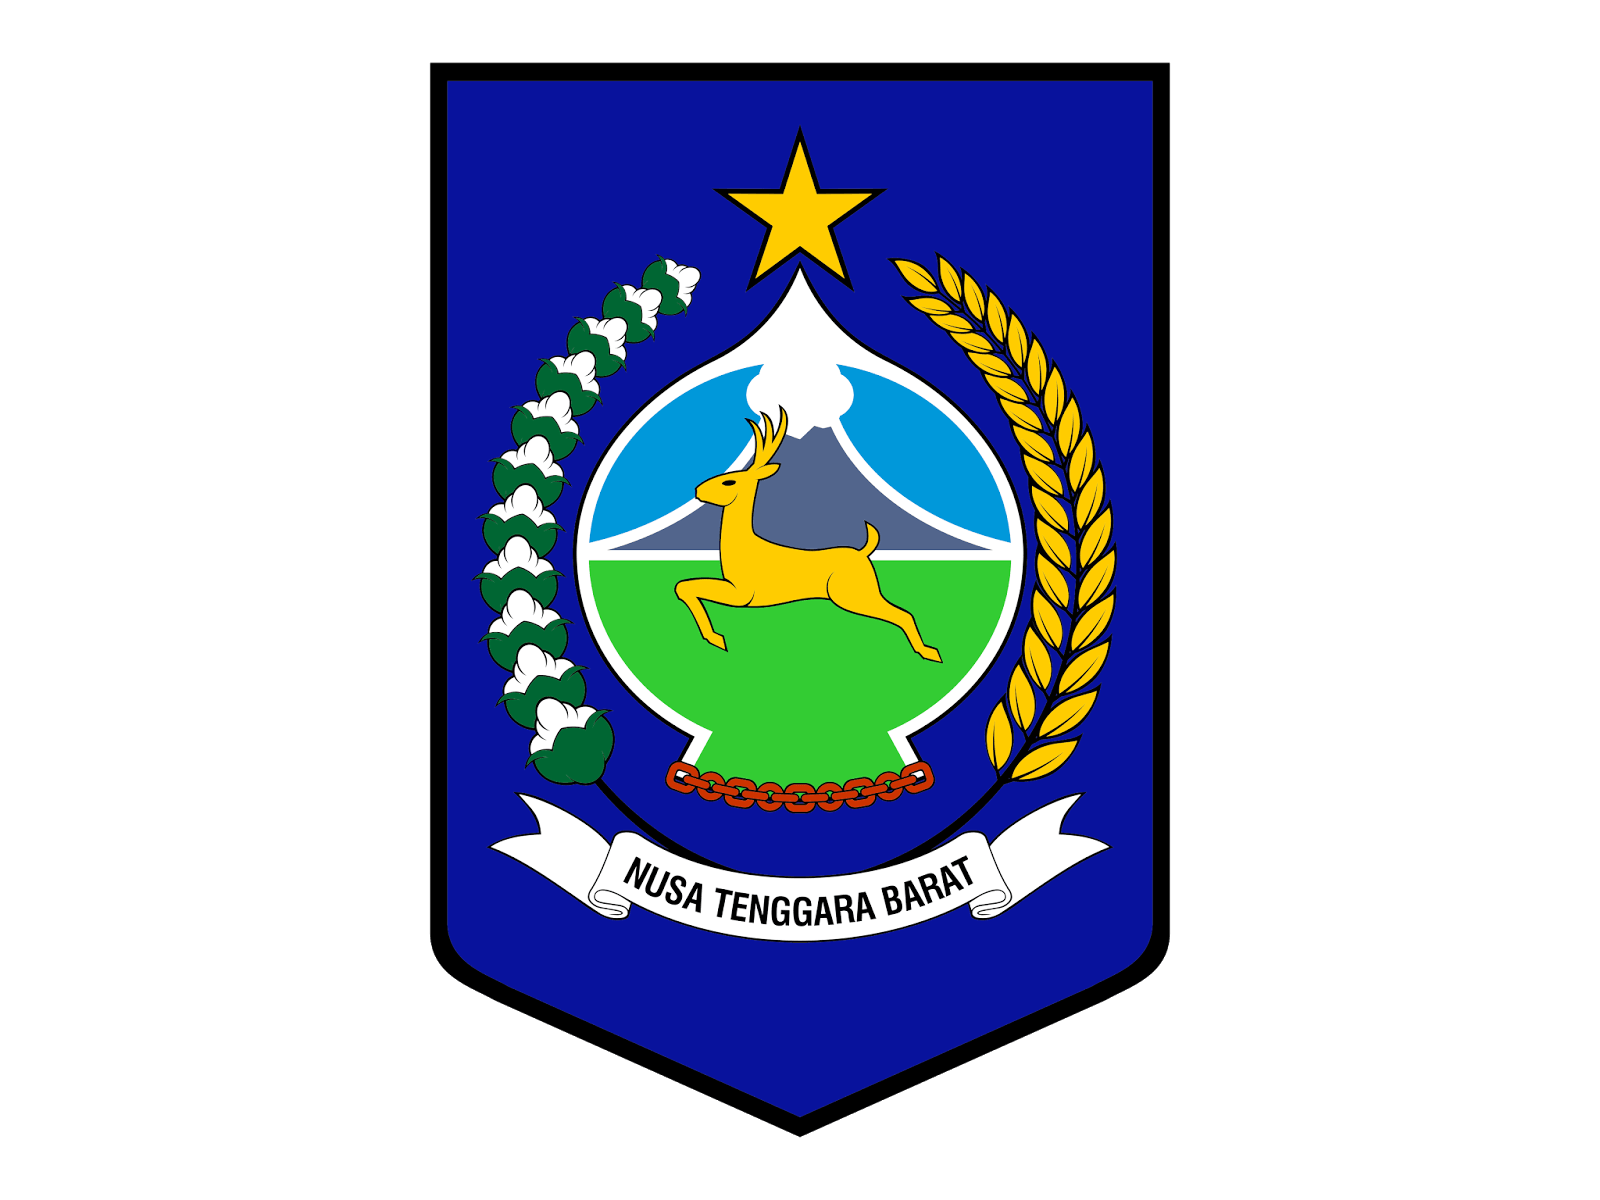 NTB Logo - Logo Provinsi Nusa Tenggara Barat ( NTB ) Format Cdr & Png | GUDRIL ...